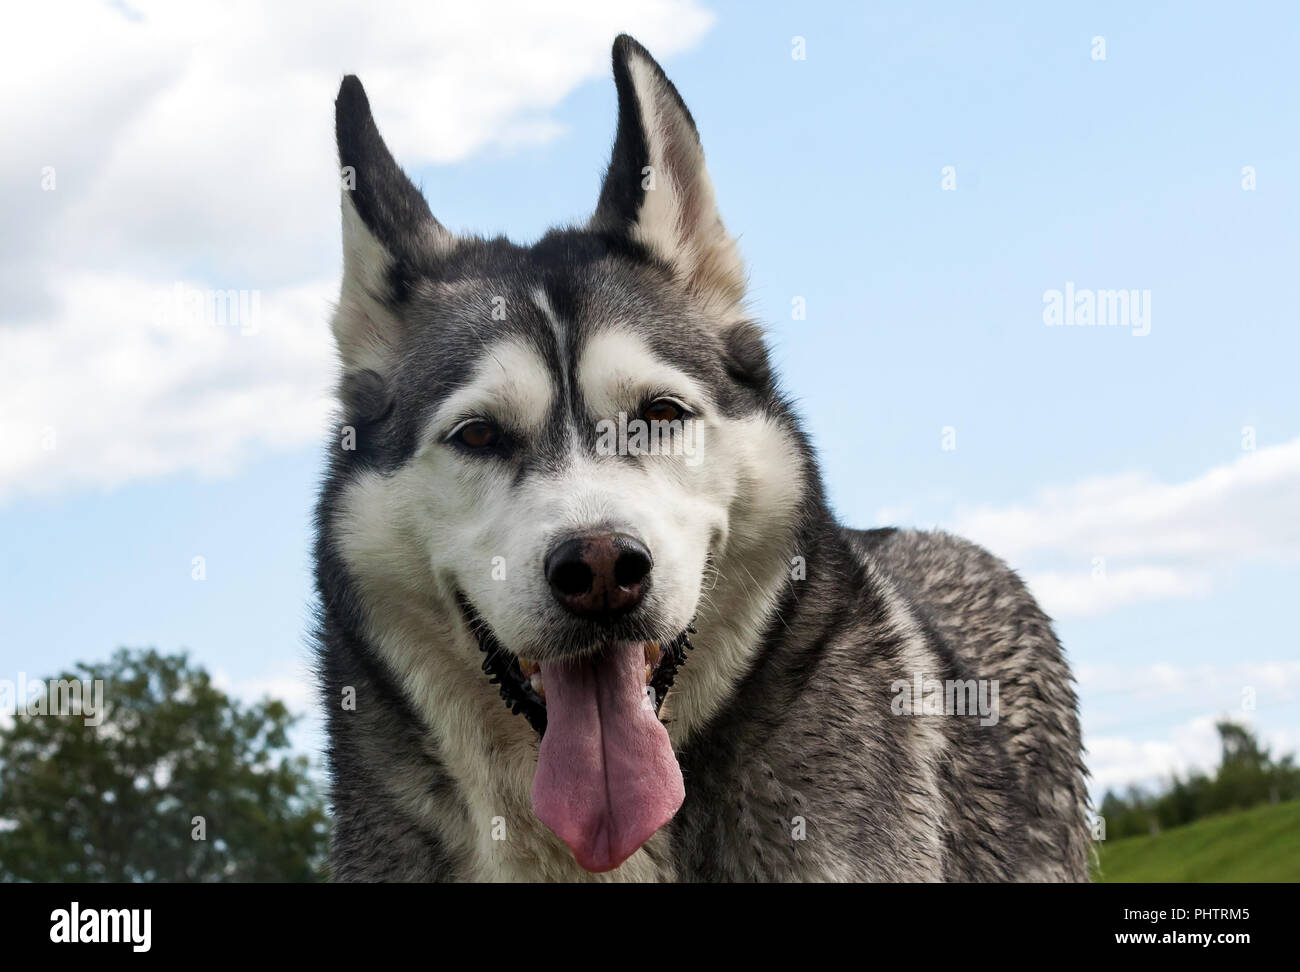 Un ritratto del cane Il muso è una razza di Alaskan Malamute, la bocca è aperta, una lunga lingua, una faccia buffa, un bel cane e un po' sporca Foto Stock